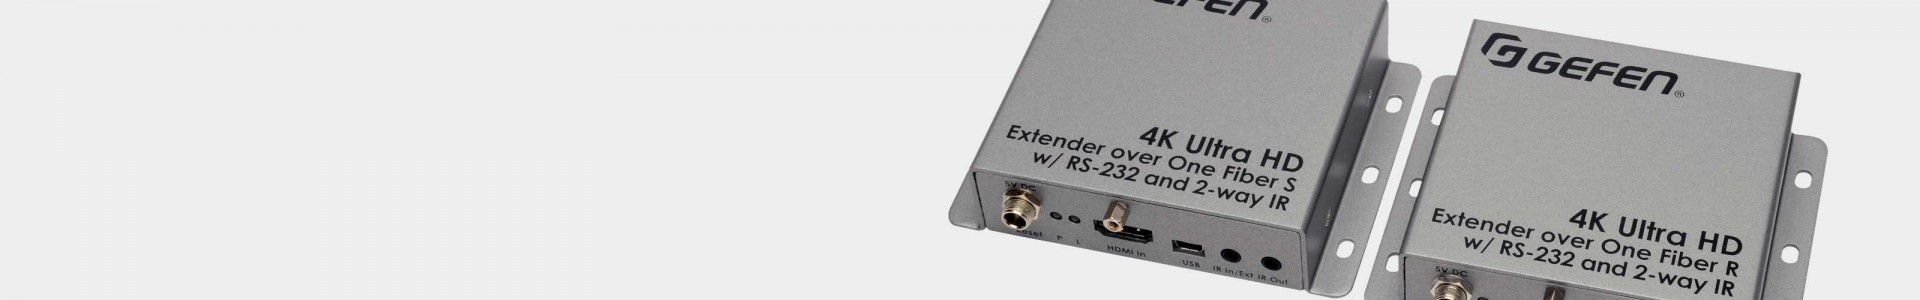 Gefen HDMI Extenders at Avacab Audiovisuales - Gefen warranty